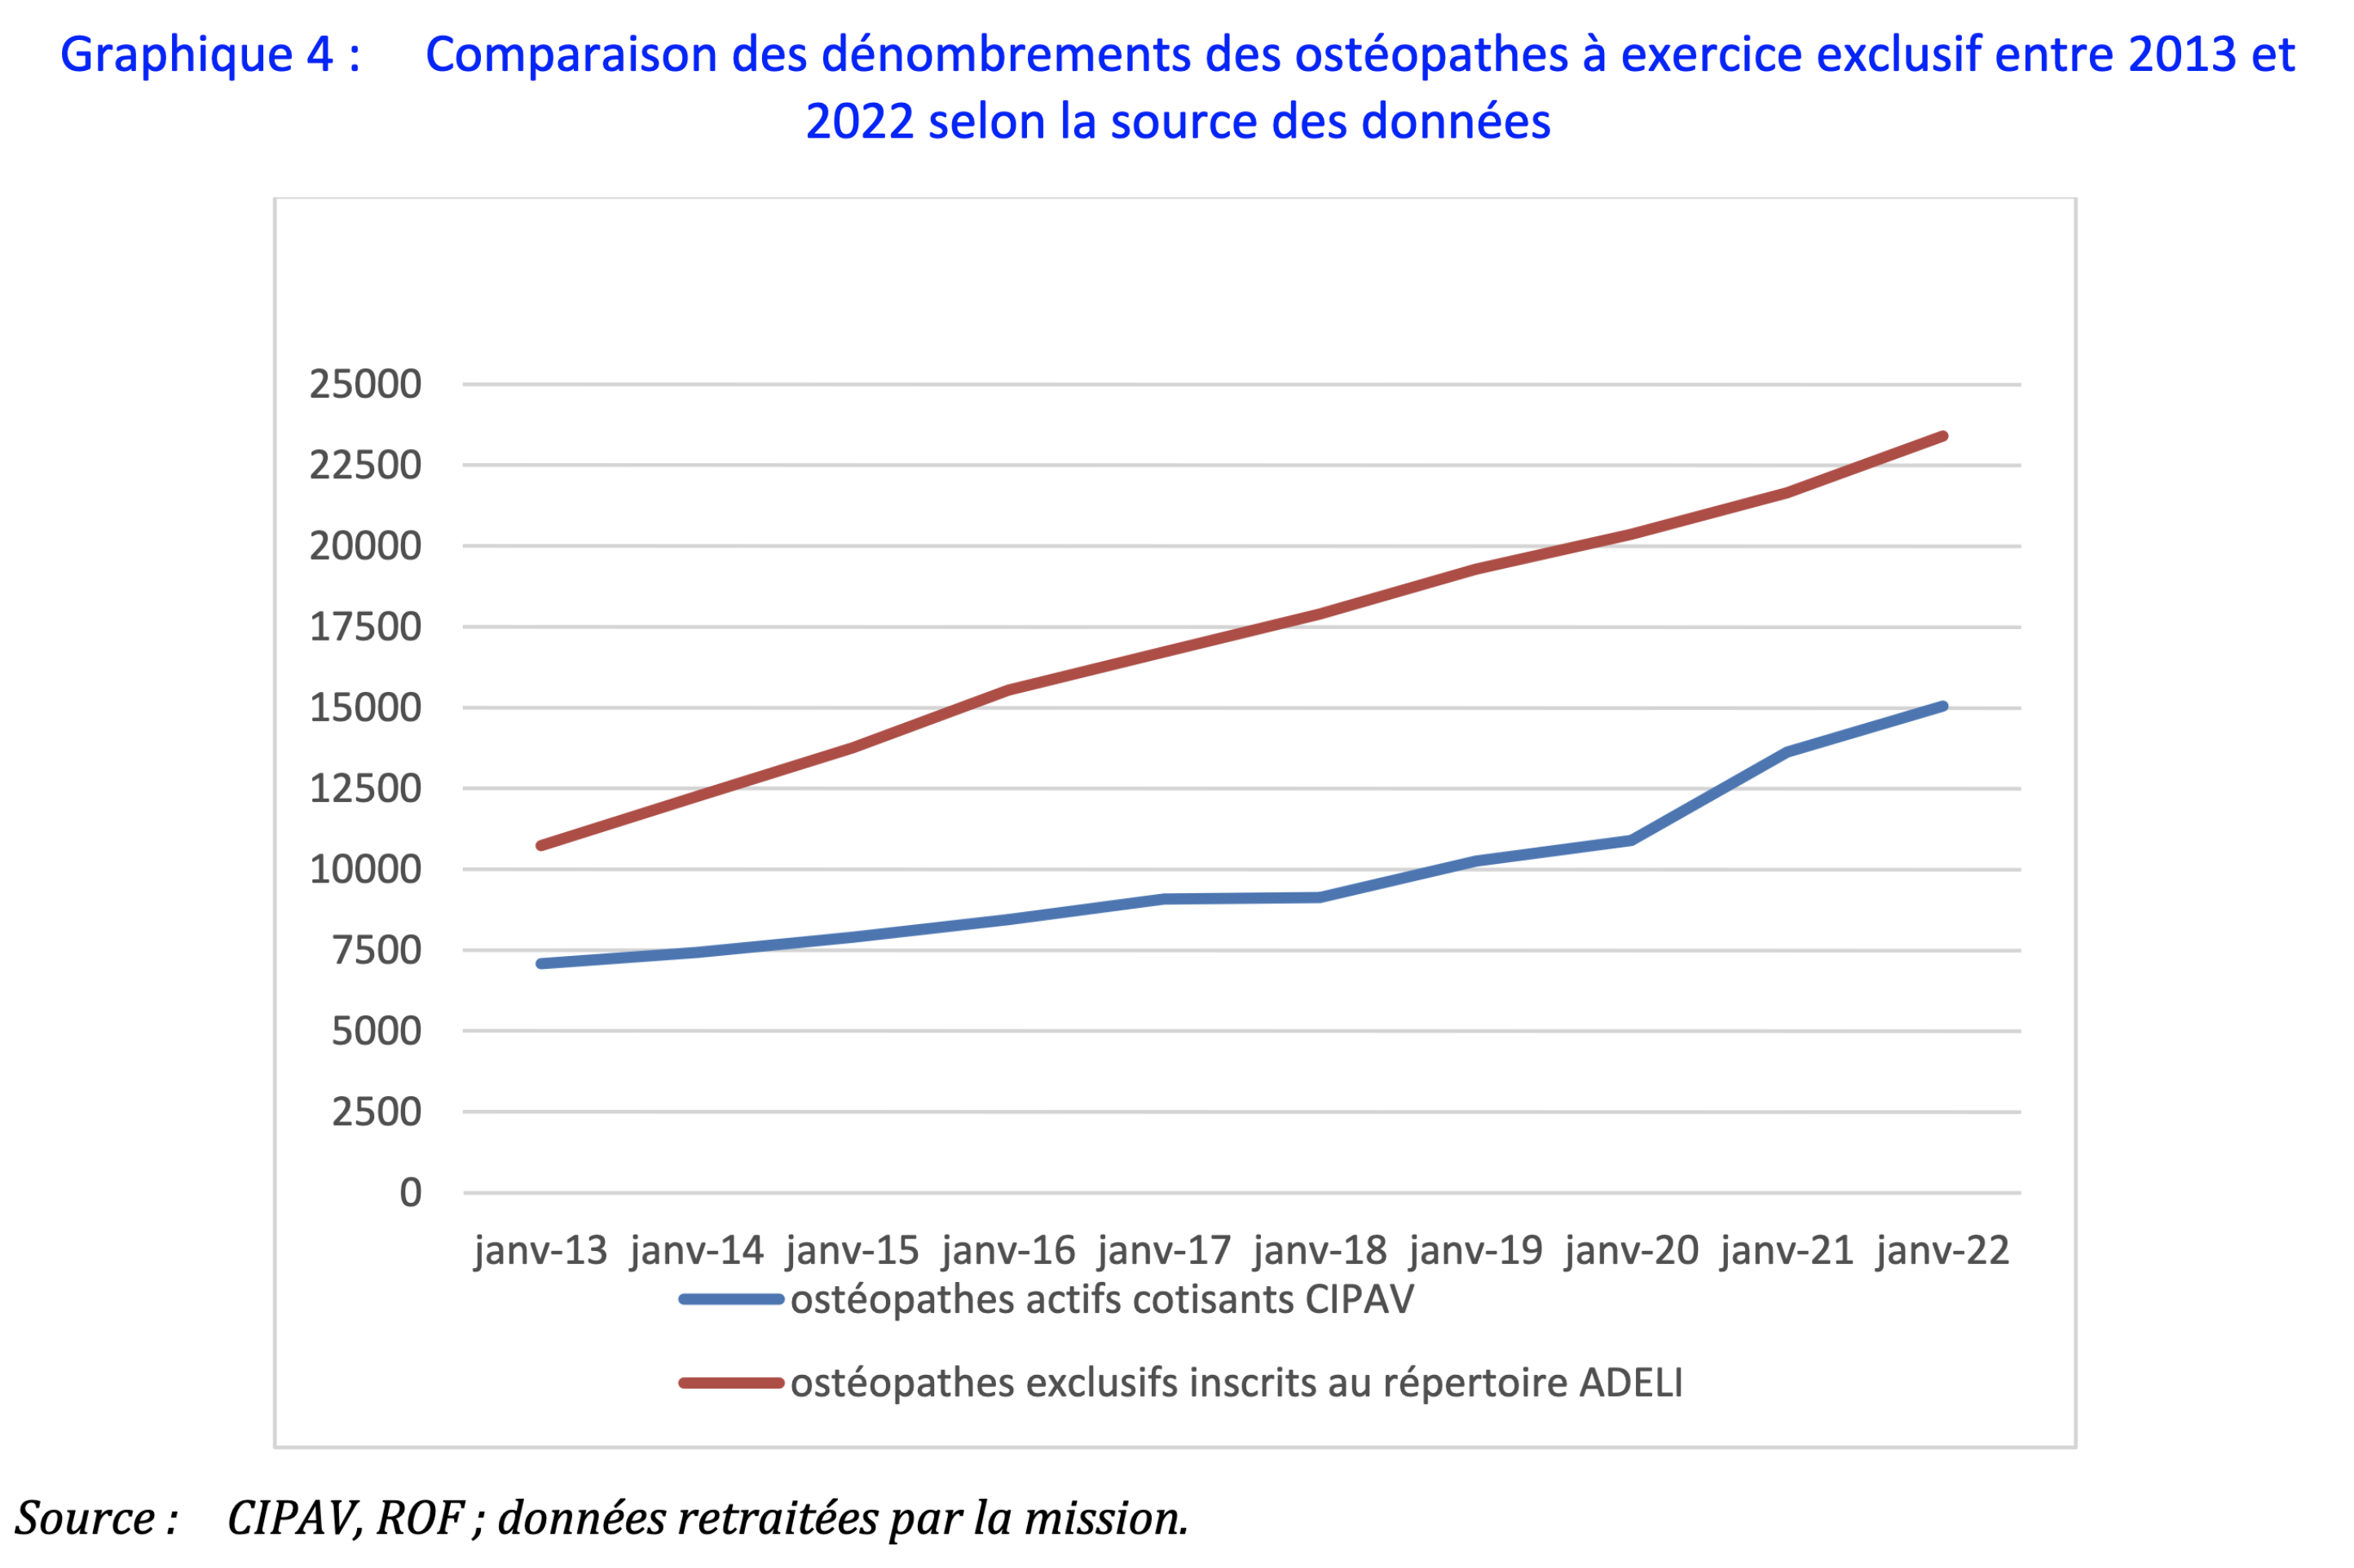 Comparaison des dénombrements des ostéopathes à exercice exclusif entre 2013 et 2022 selon la source des données